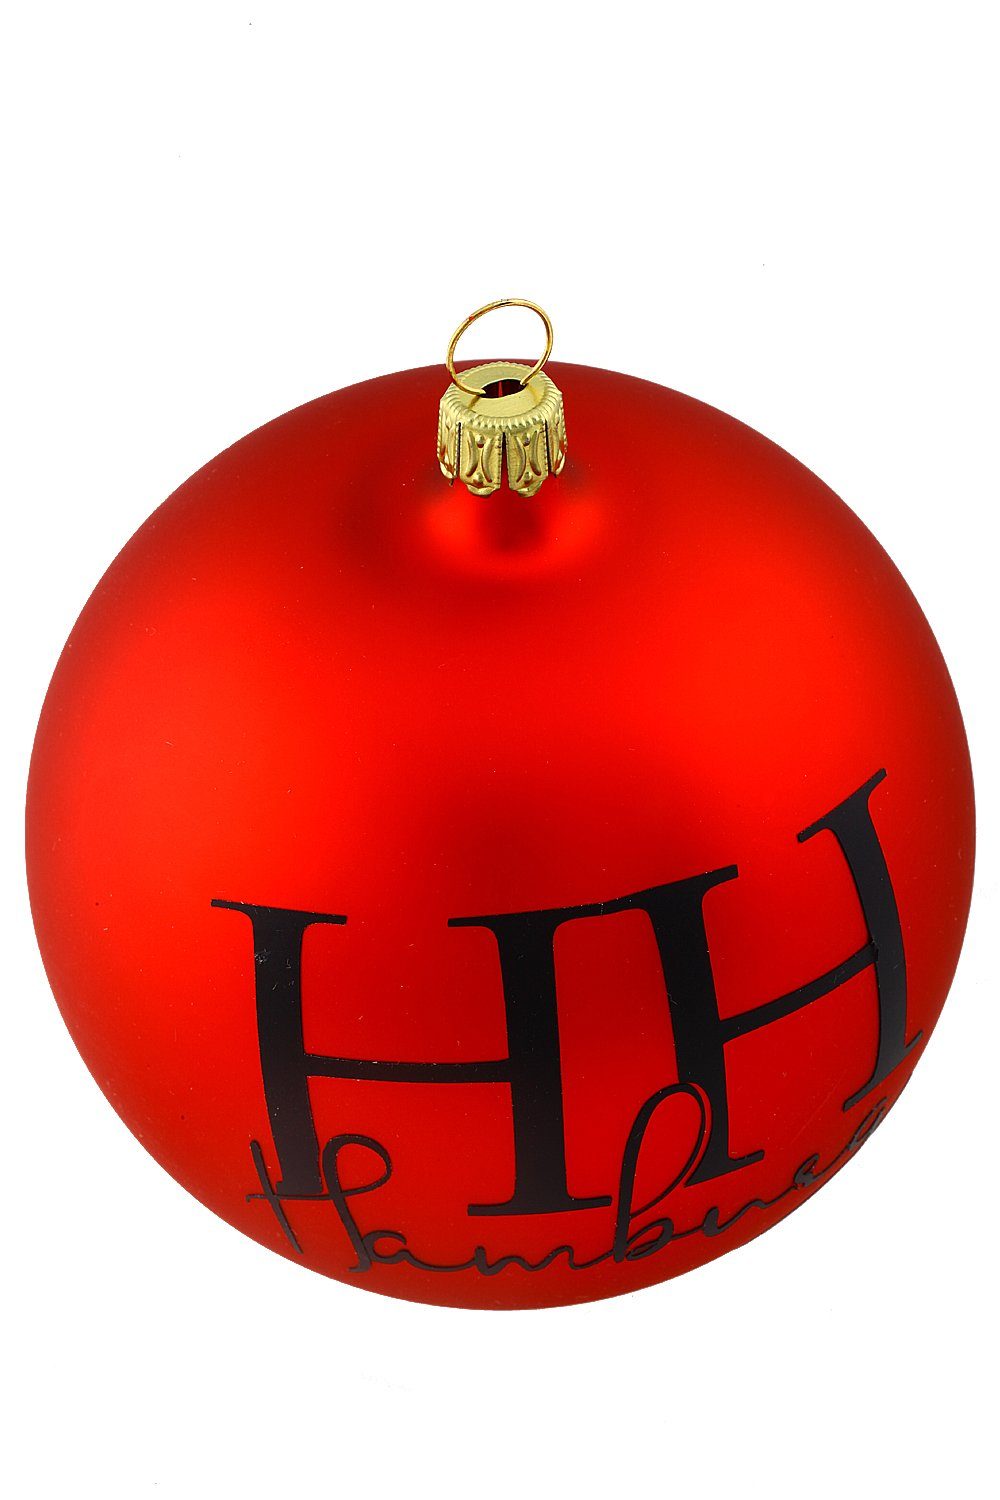 - Hamburger handdekoriert Weihnachtskontor Dekohänger - mundgeblasen Hamburg, - Weihnachtsbaumkugel Kugel Rote